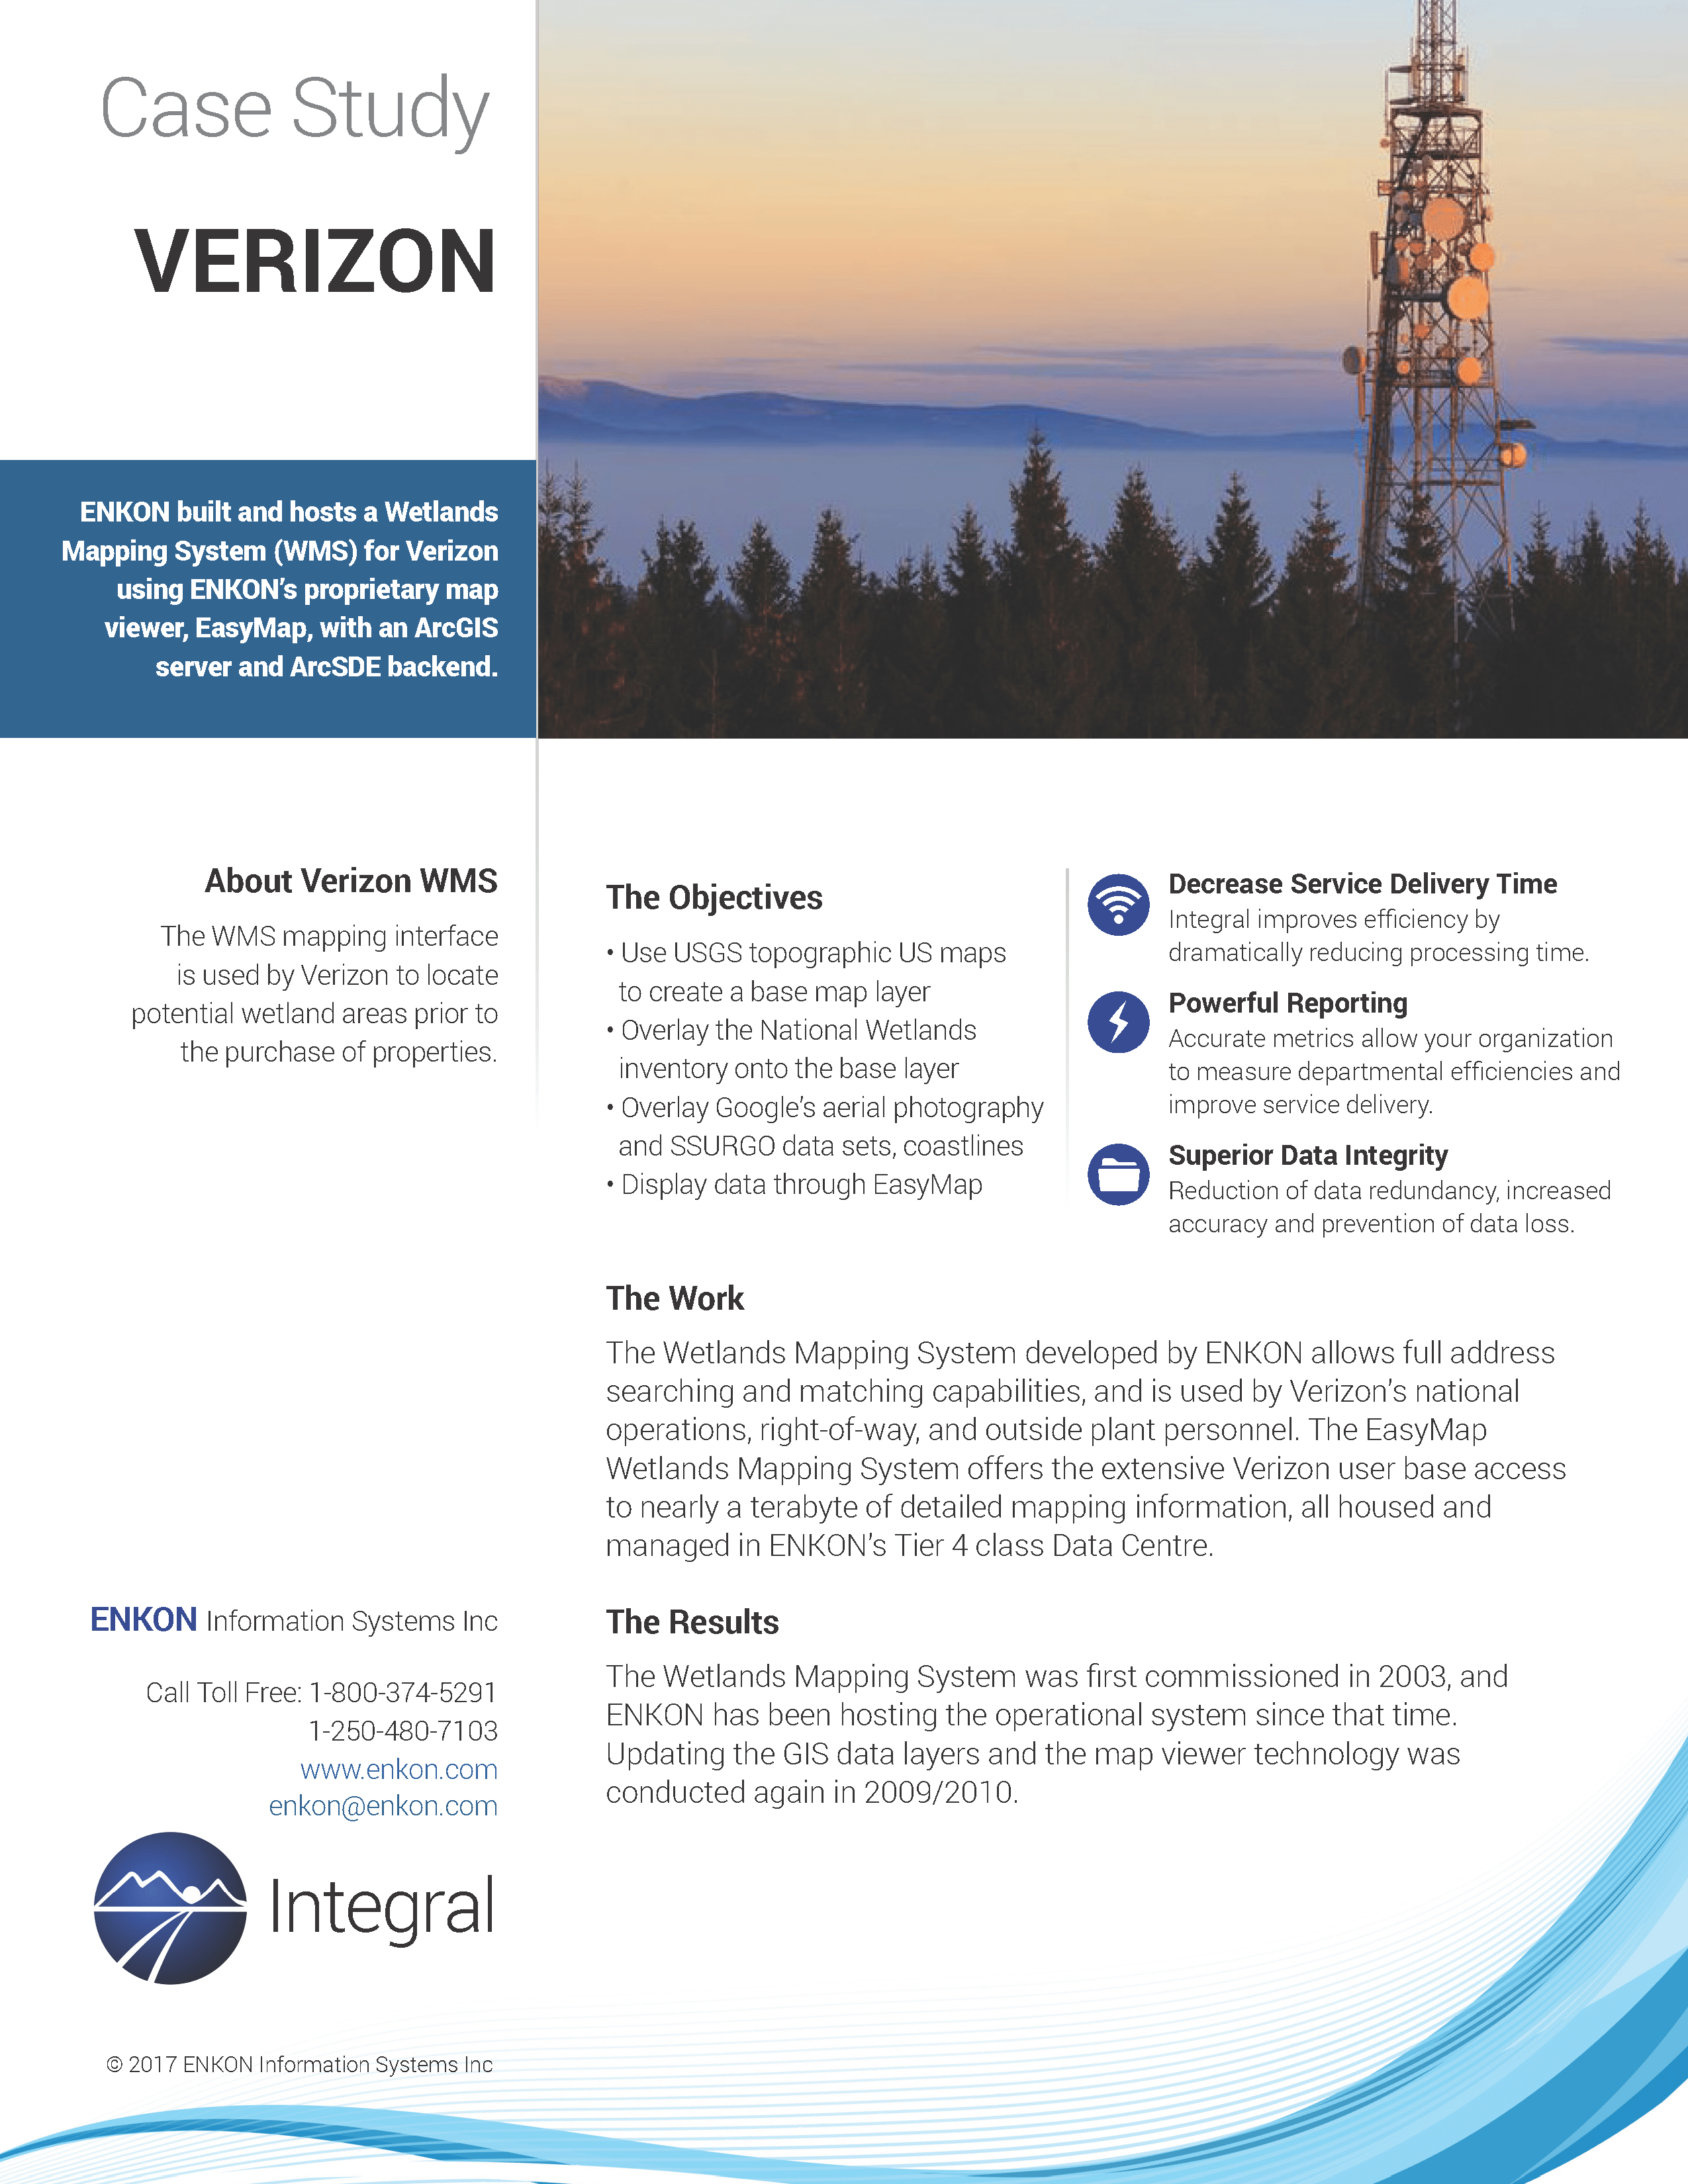 Verizon 1.2